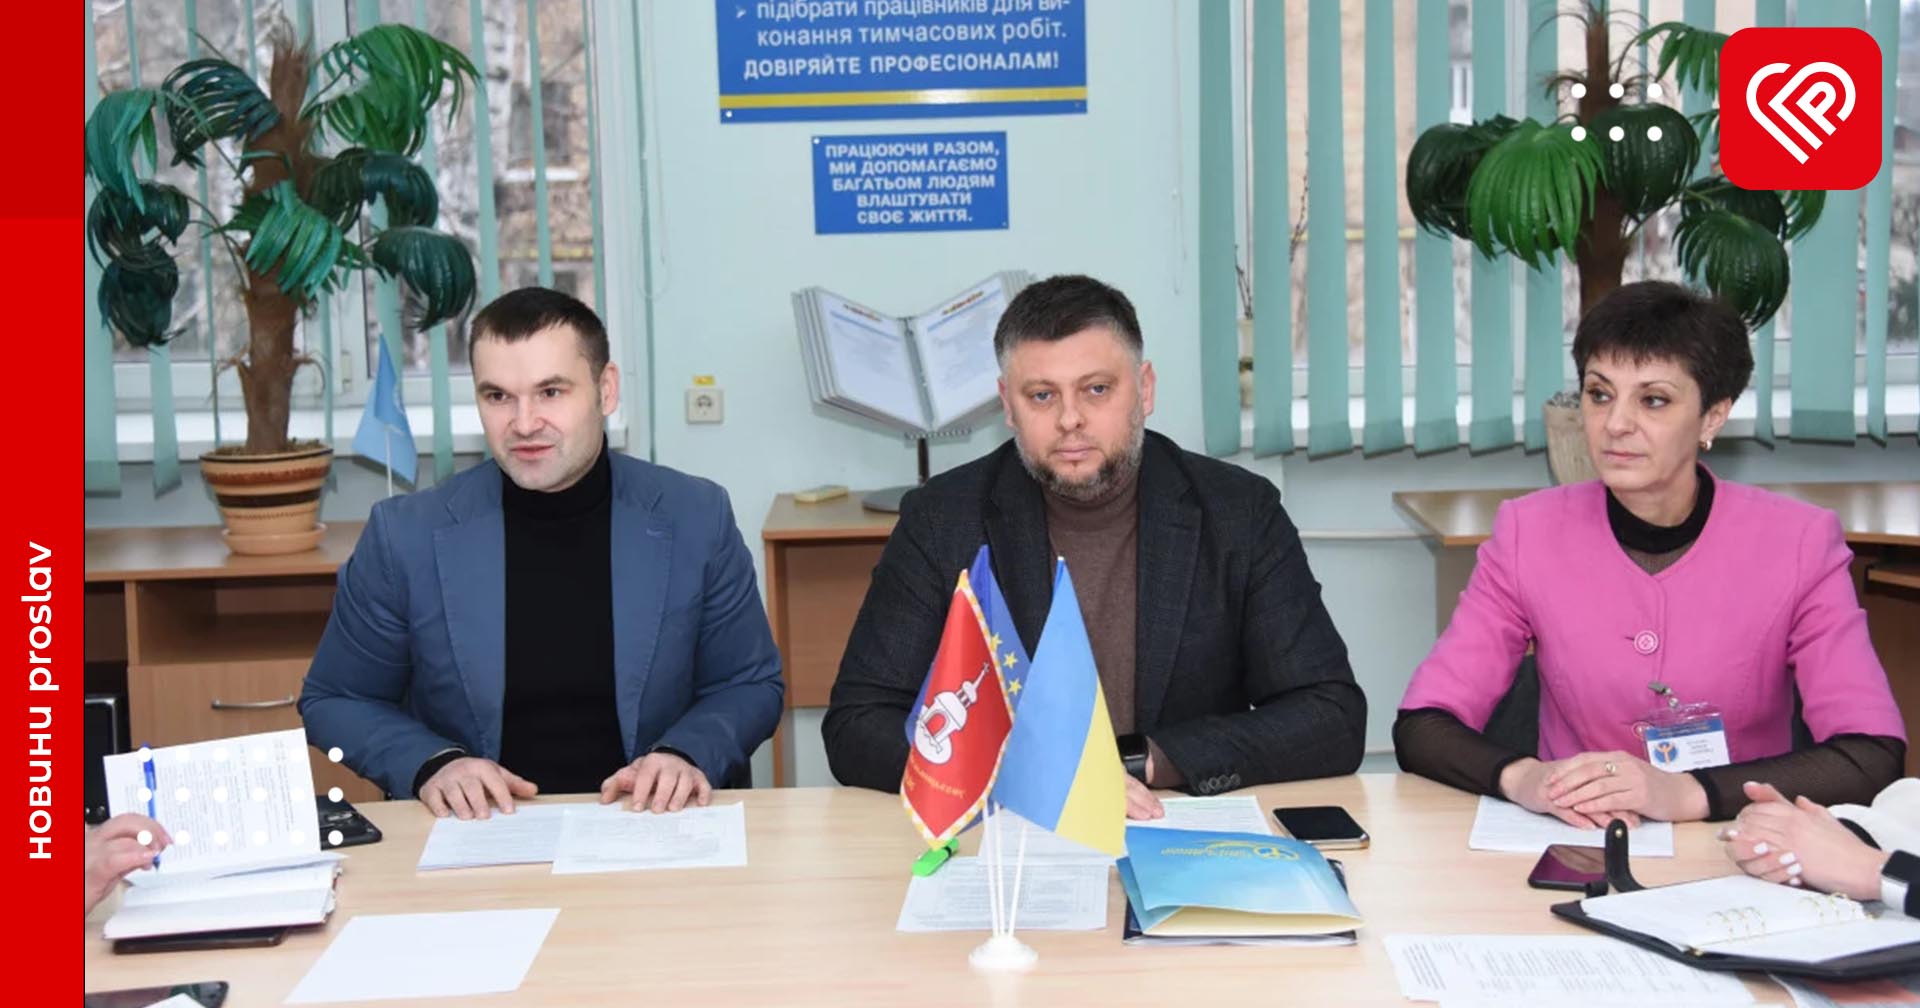 Київський обласний центр зайнятості та Університет Григорія Сковороди в Переяславі провели круглий стіл та підписали договір про співпрацю